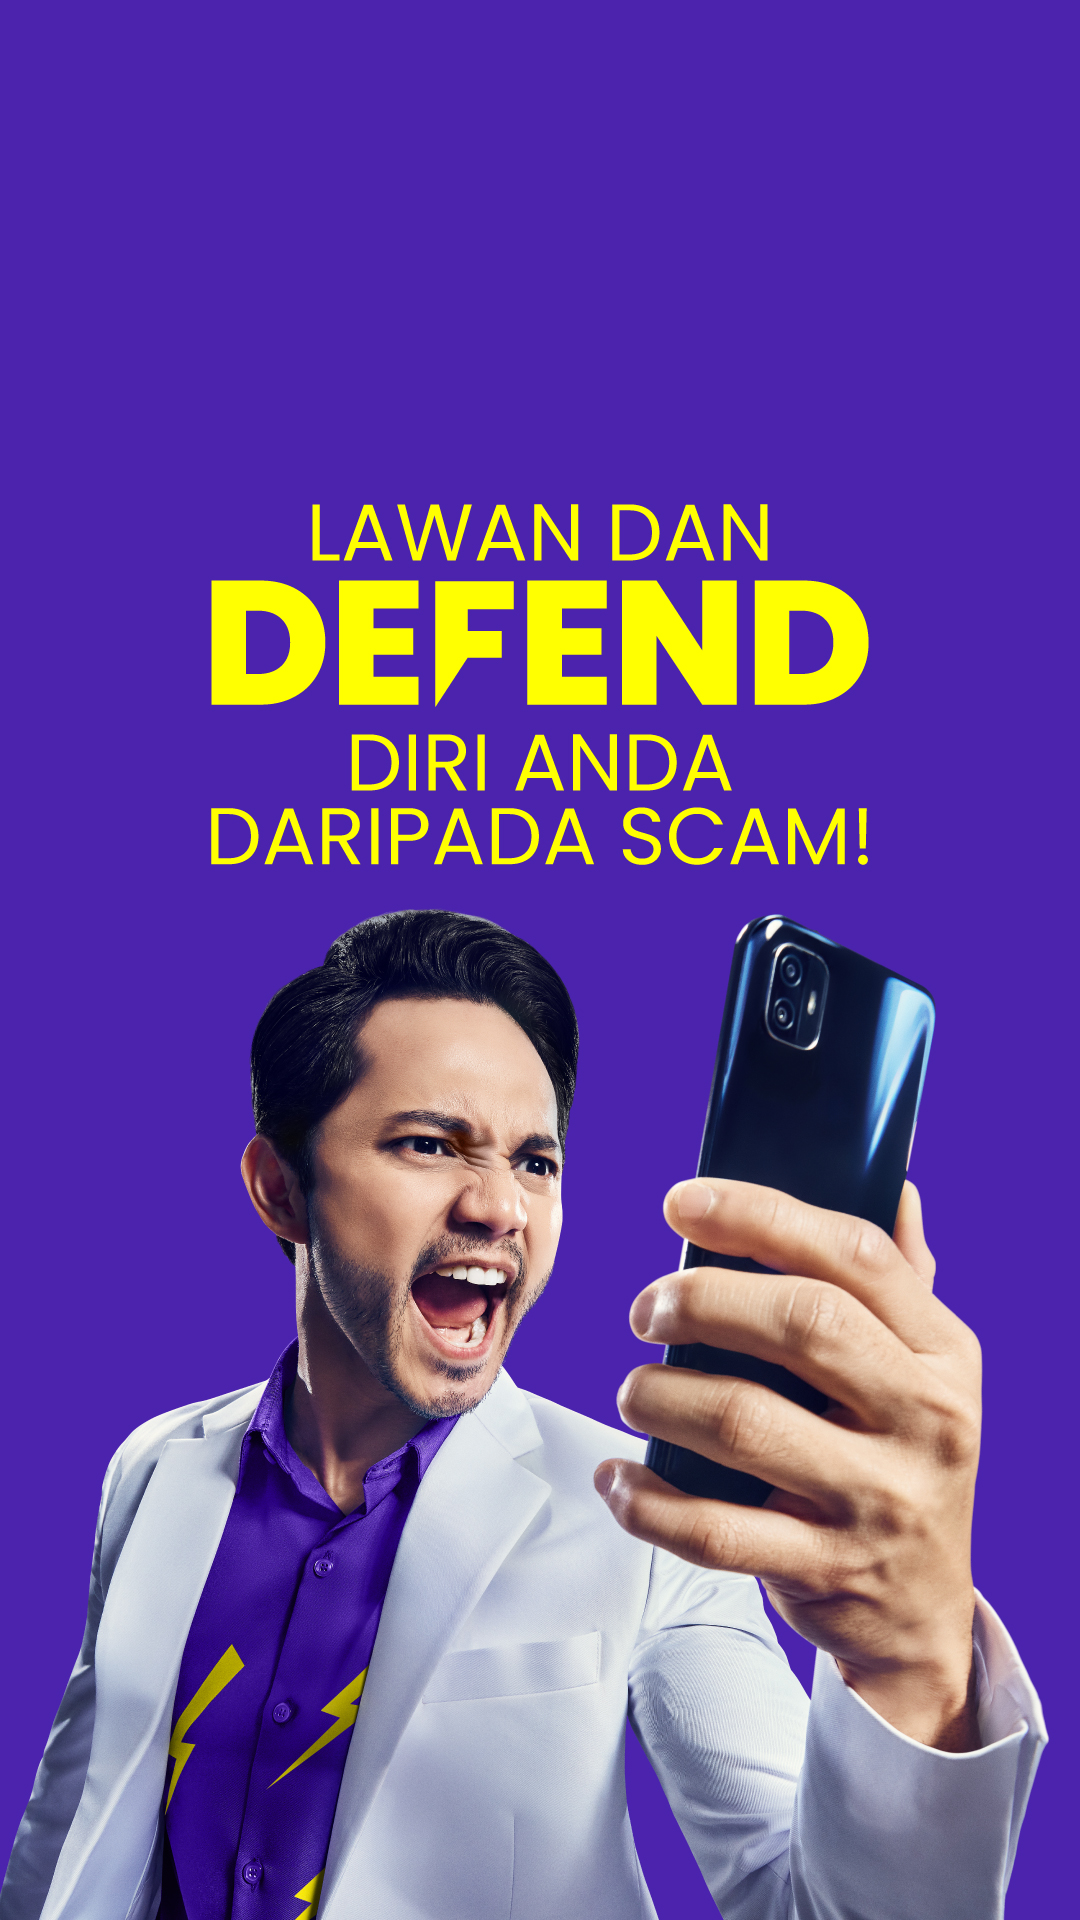 Image for #JanganKenaScam: Lawan dan Defend Diri Anda Daripada Scam!